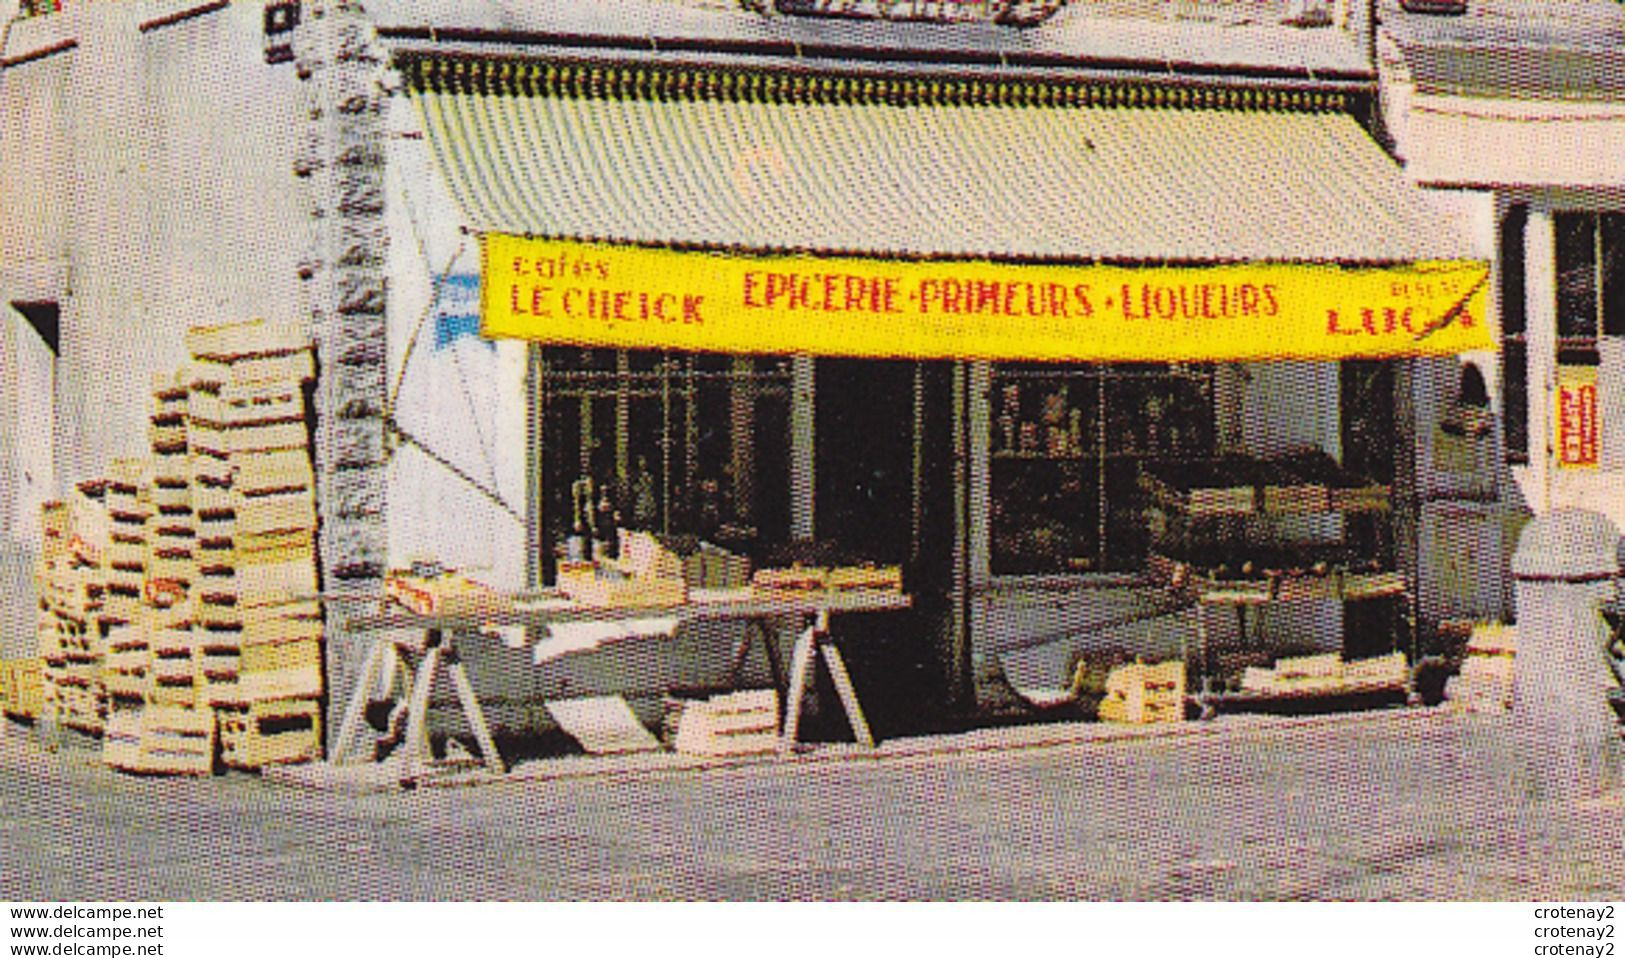 43 SAUGUES N°16006 La Tour Des Anglais VOIR ZOOM Magasin Epicerie Primeurs Liqueurs Café Le Cheick Monument VOIR DOS - Saugues